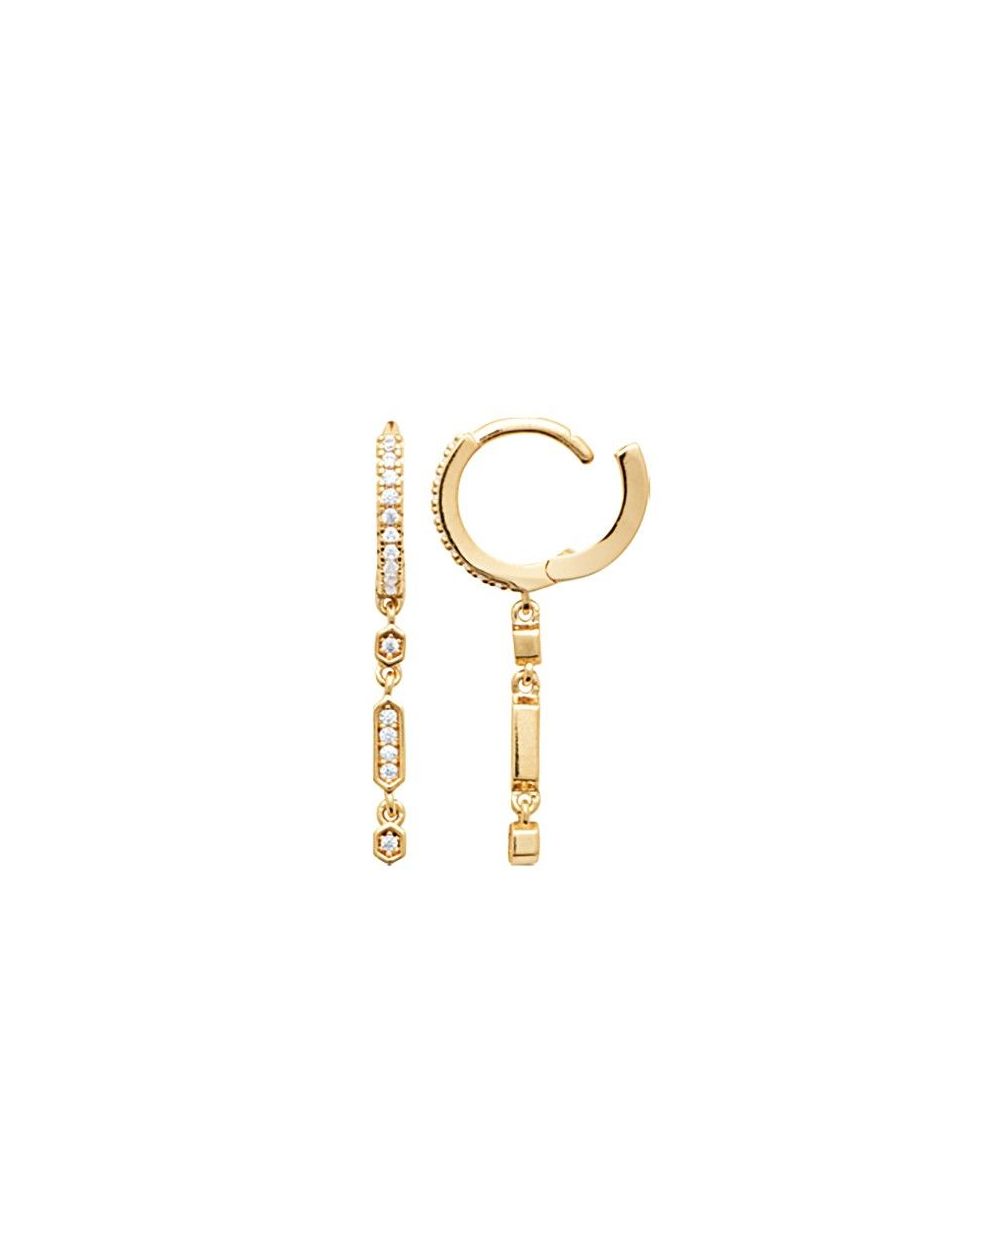 Créoles pendantes dorée pour femme - Bijoux plaqué or